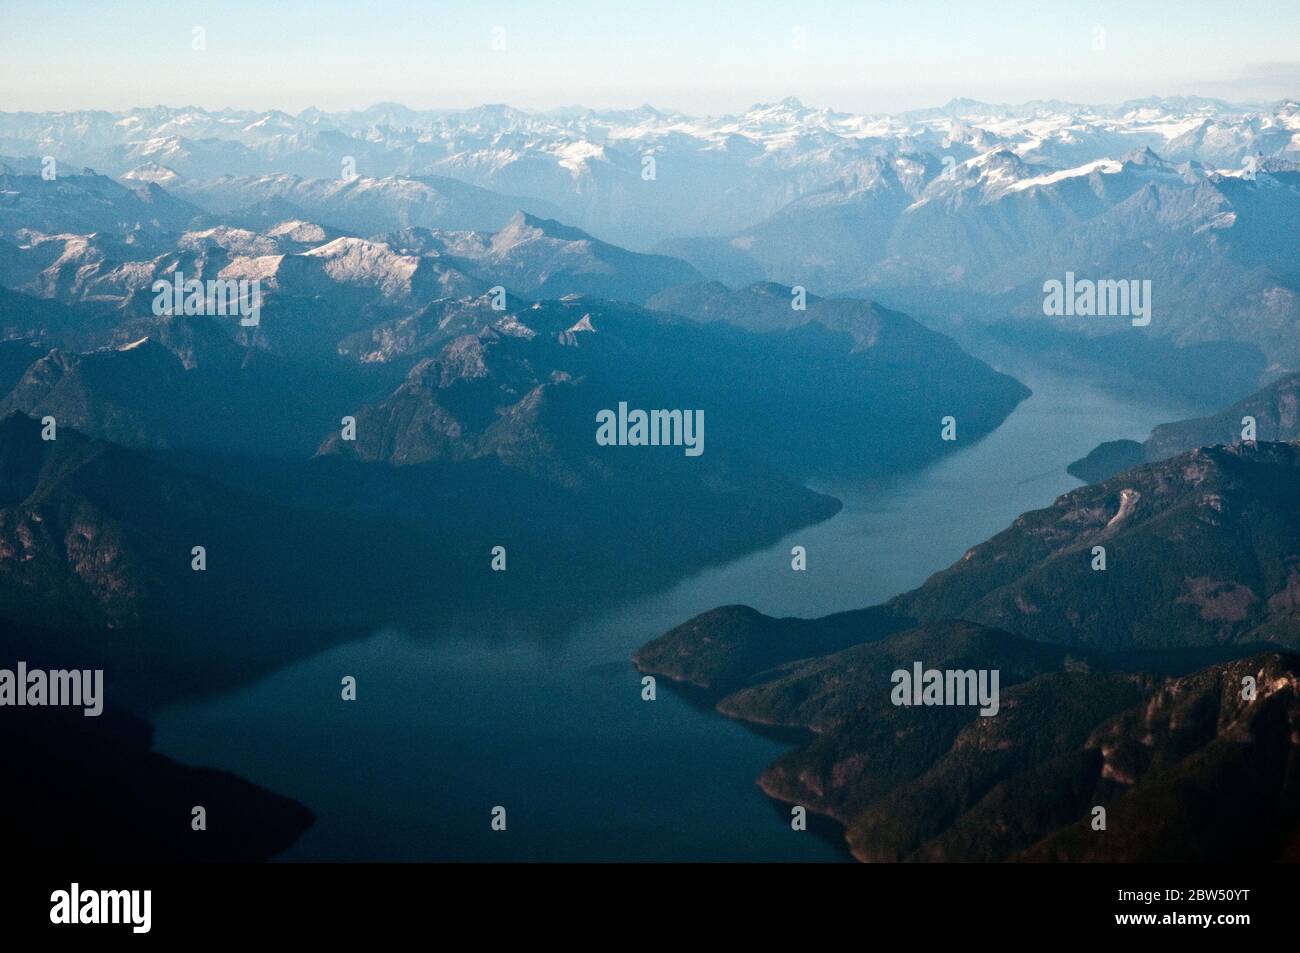 Eine Luftaufnahme des Bute Inlet und der Fjorde der Coast Mountains an der südlichen Pazifikküste des Festlands von British Columbia, Kanada. Stockfoto